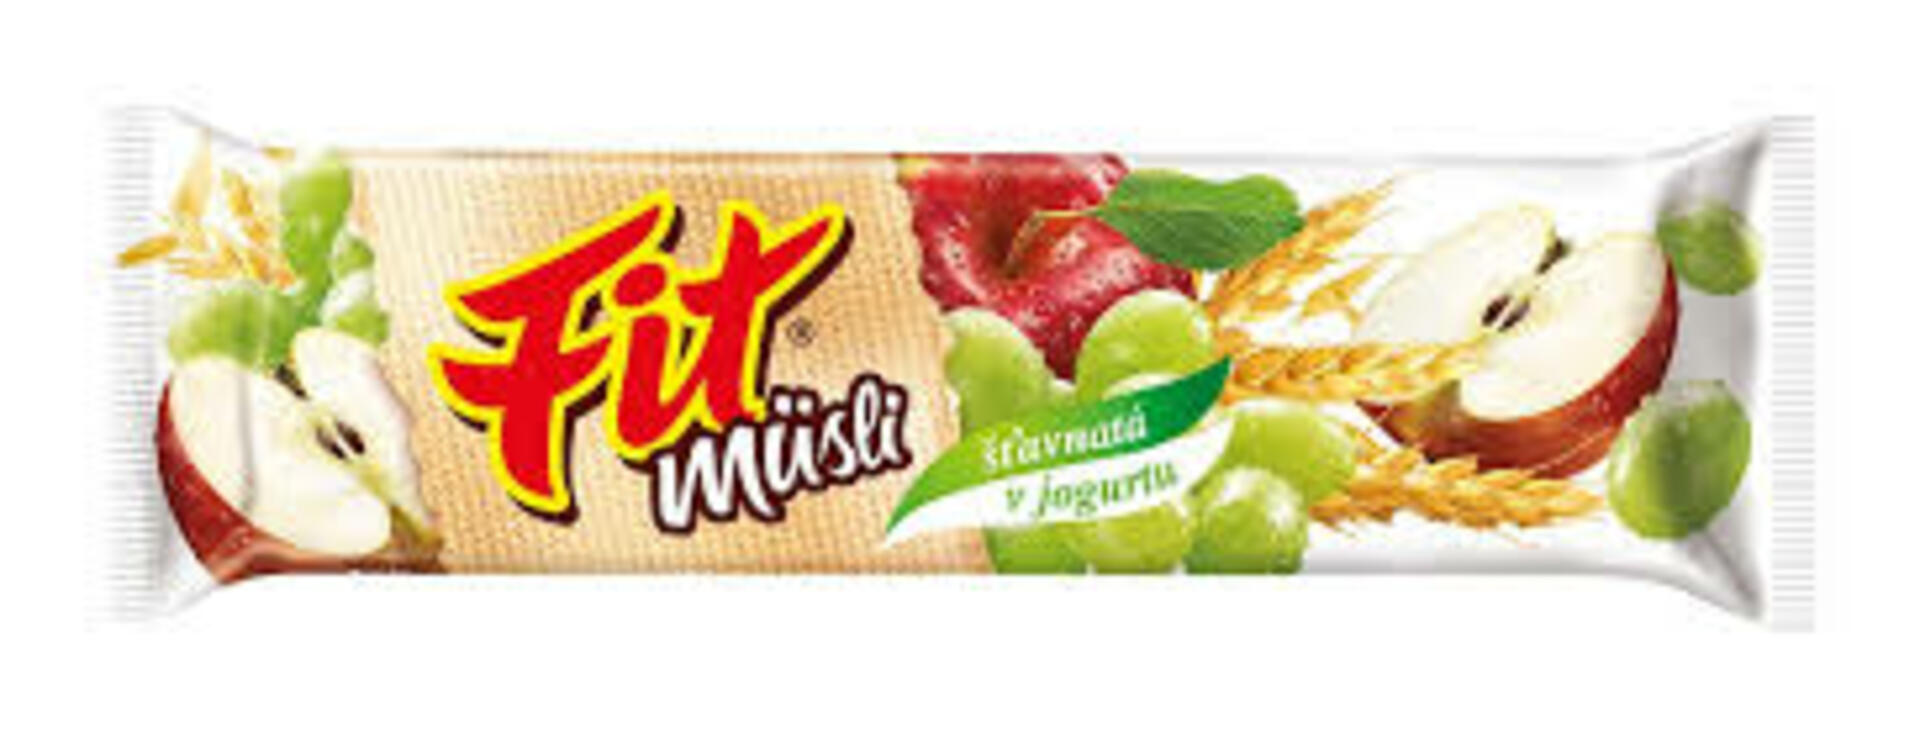 Fit Musli šťavnatá v jogurtu 35 g - expirace